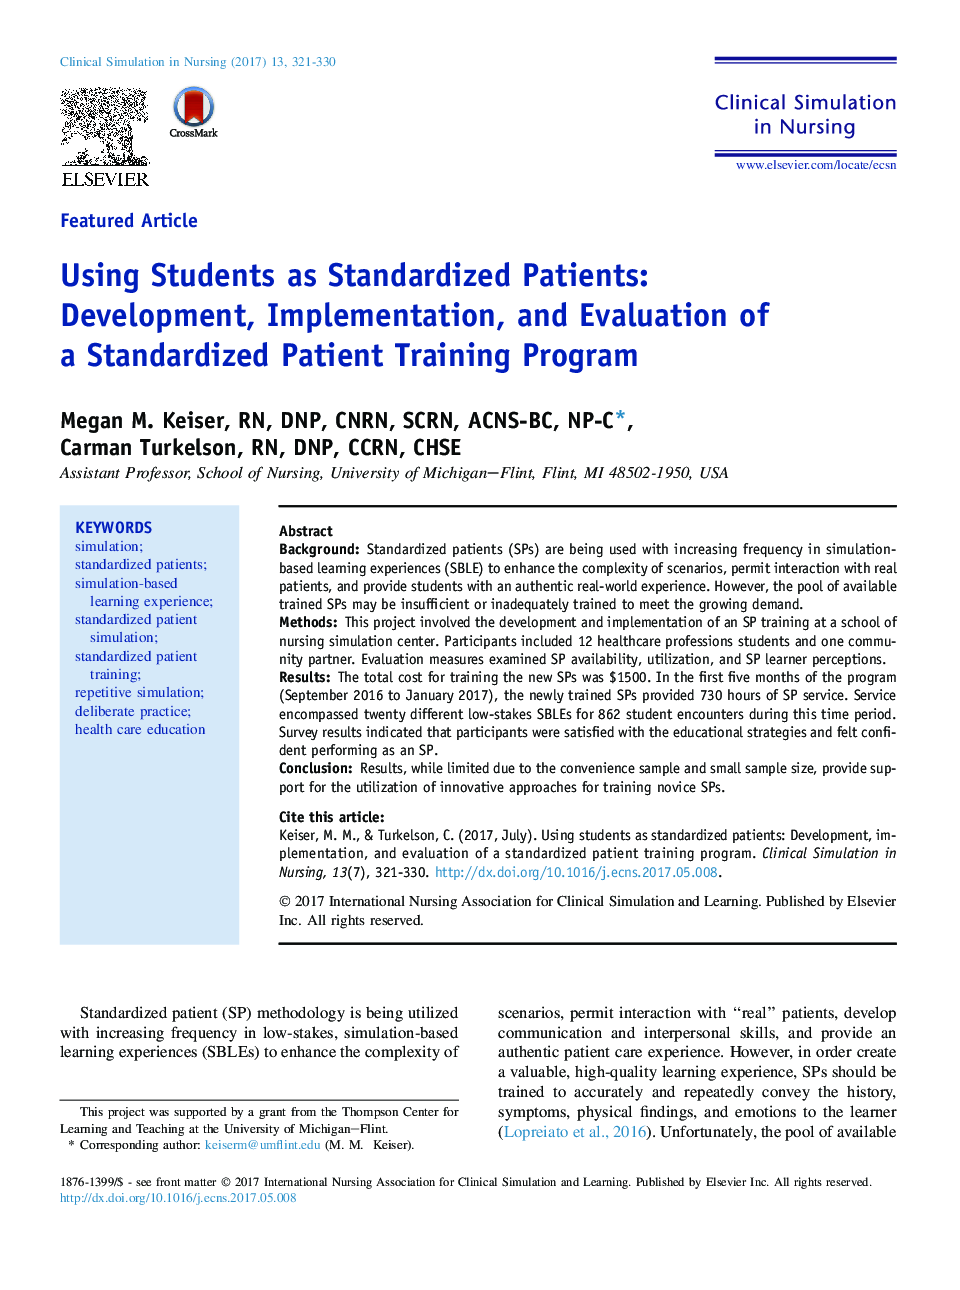 استفاده از دانشجویان به عنوان بیماران استاندارد: توسعه، پیاده سازی و ارزیابی یک برنامه آموزش استاندارد بیمار 